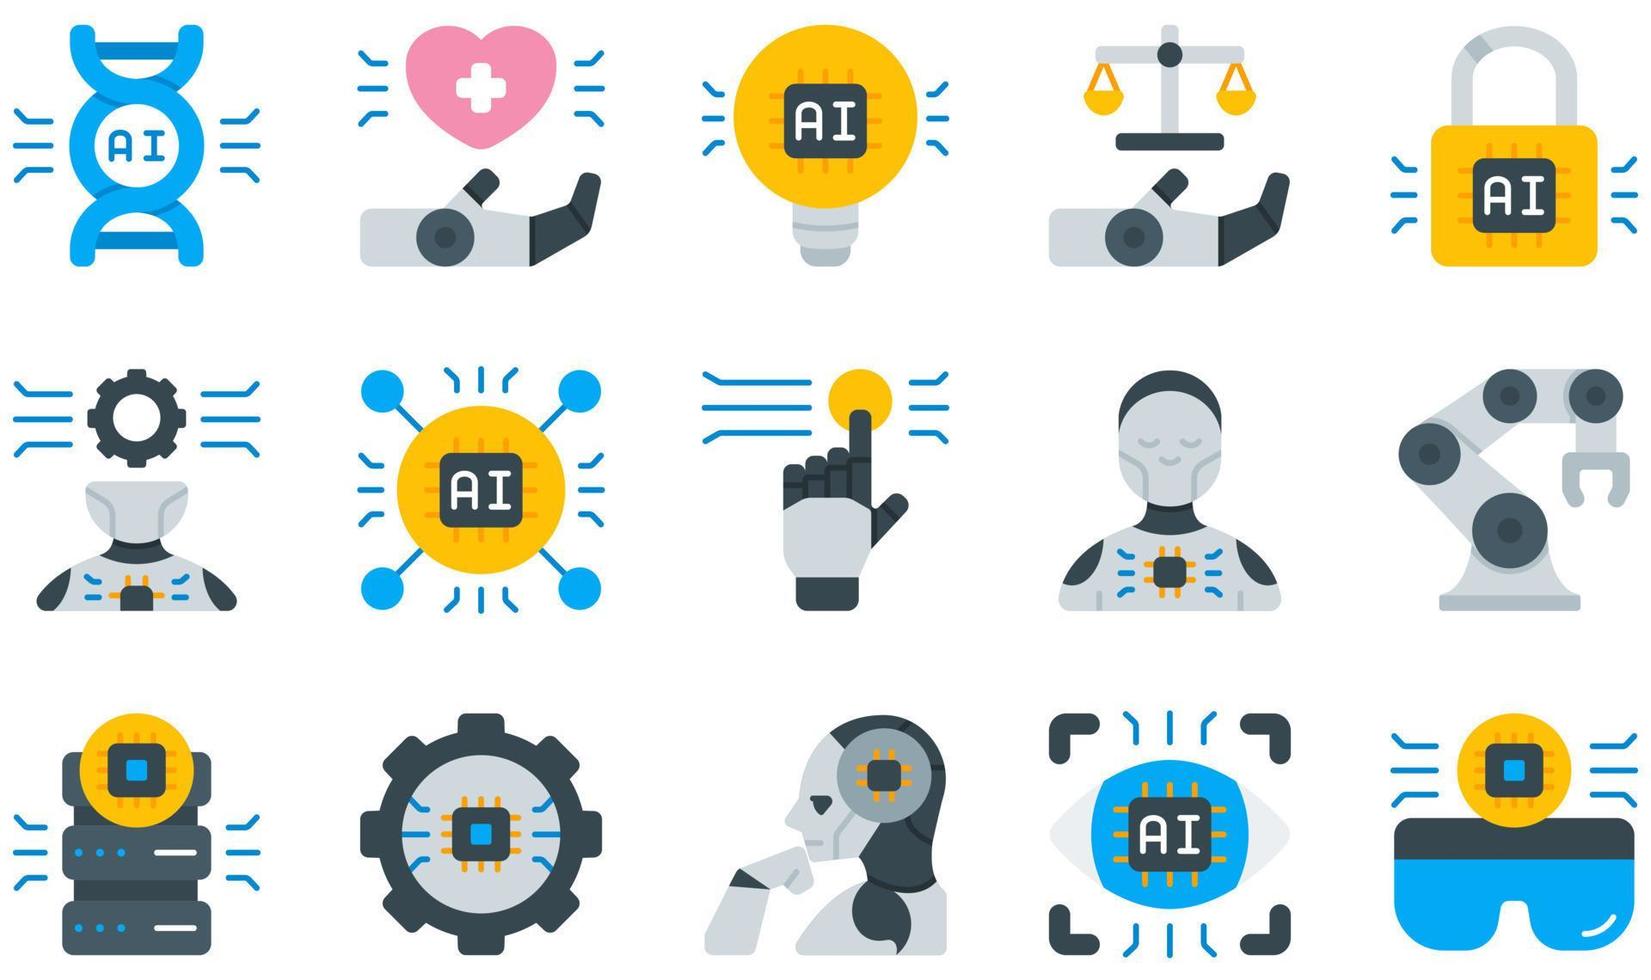 uppsättning vektor ikoner relaterade till artificiell intelligens. innehåller sådana ikoner som sjukvård, idé, juridik, maskininlärning, robot, robotarm och mer.